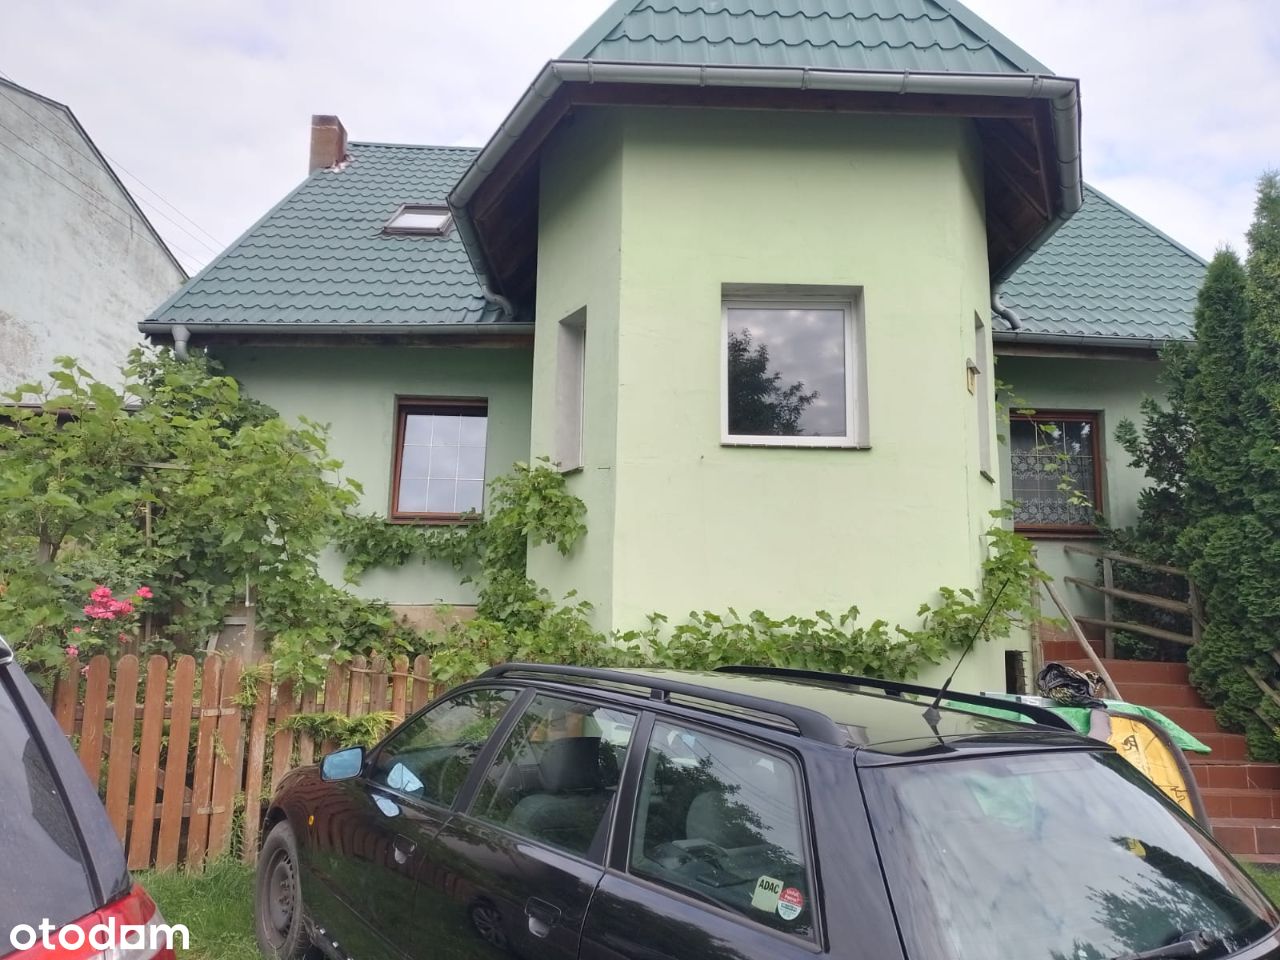 Duży dom + domki wczasowe w Łagowie Lubuskim.